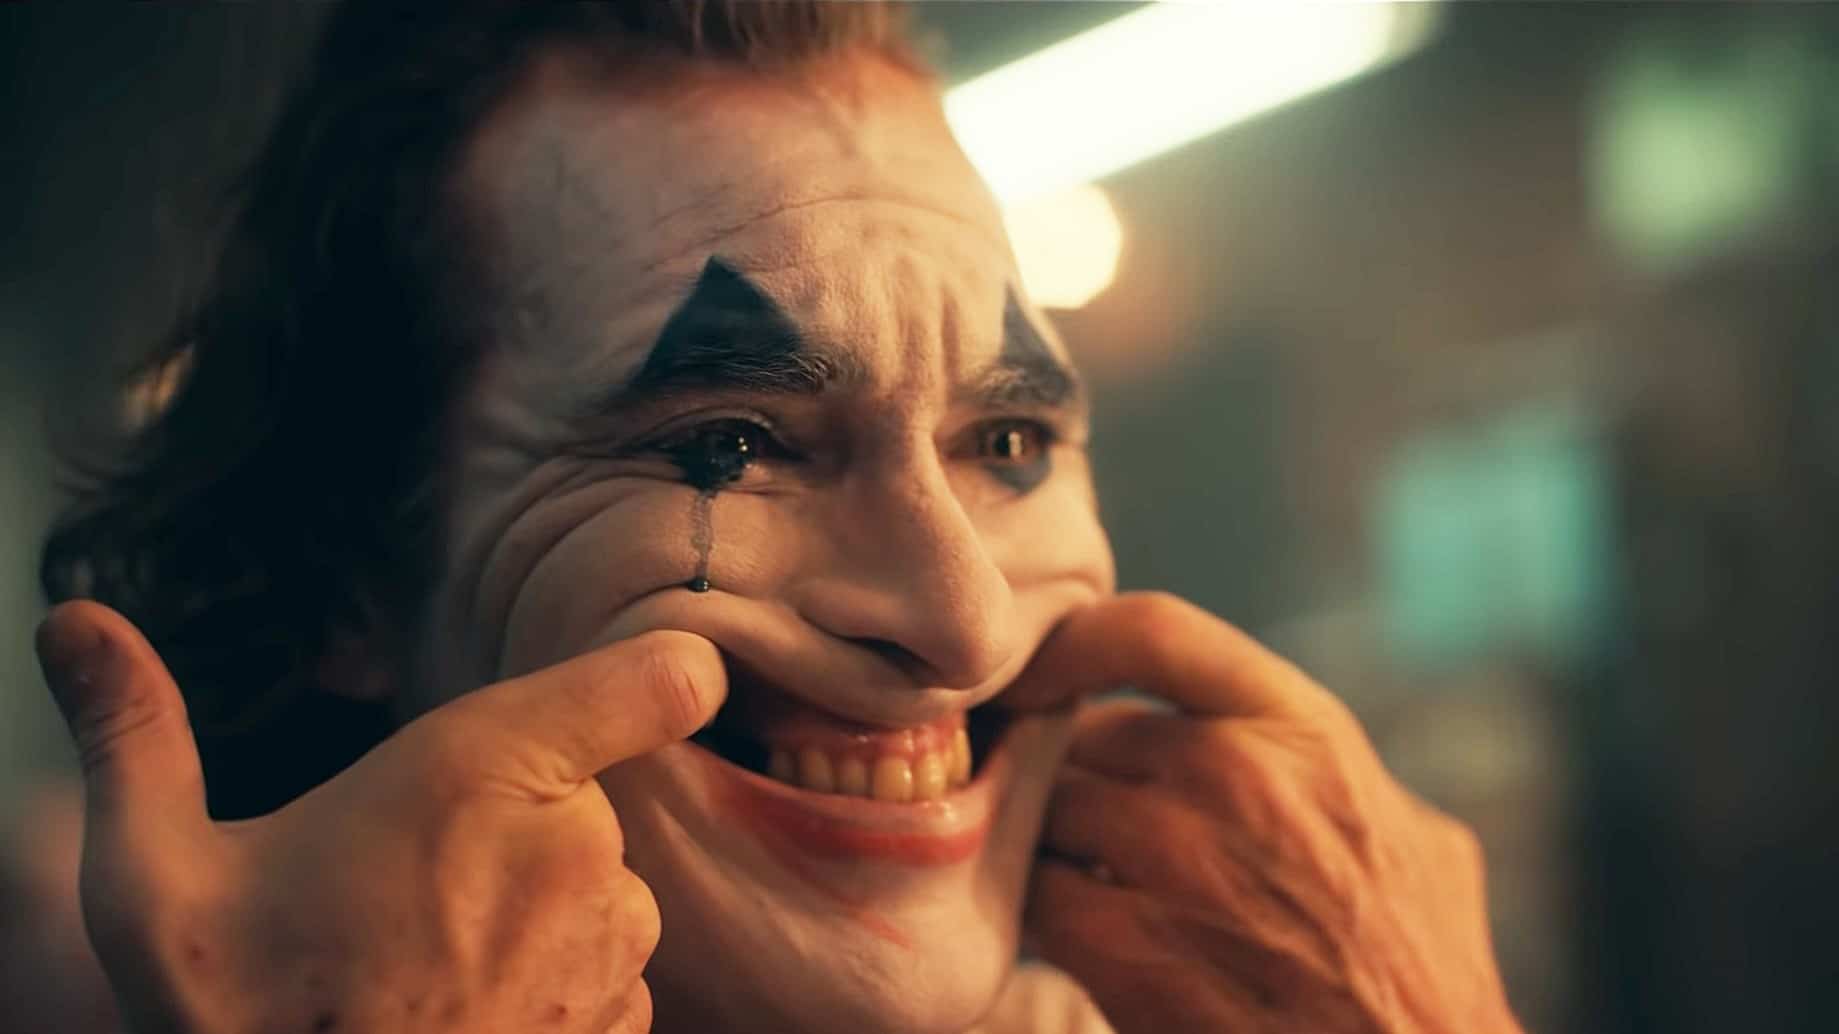 Joker'in Hastalığı Olarak Bilinen Gülme Hastalığı Psödobulbar Etki